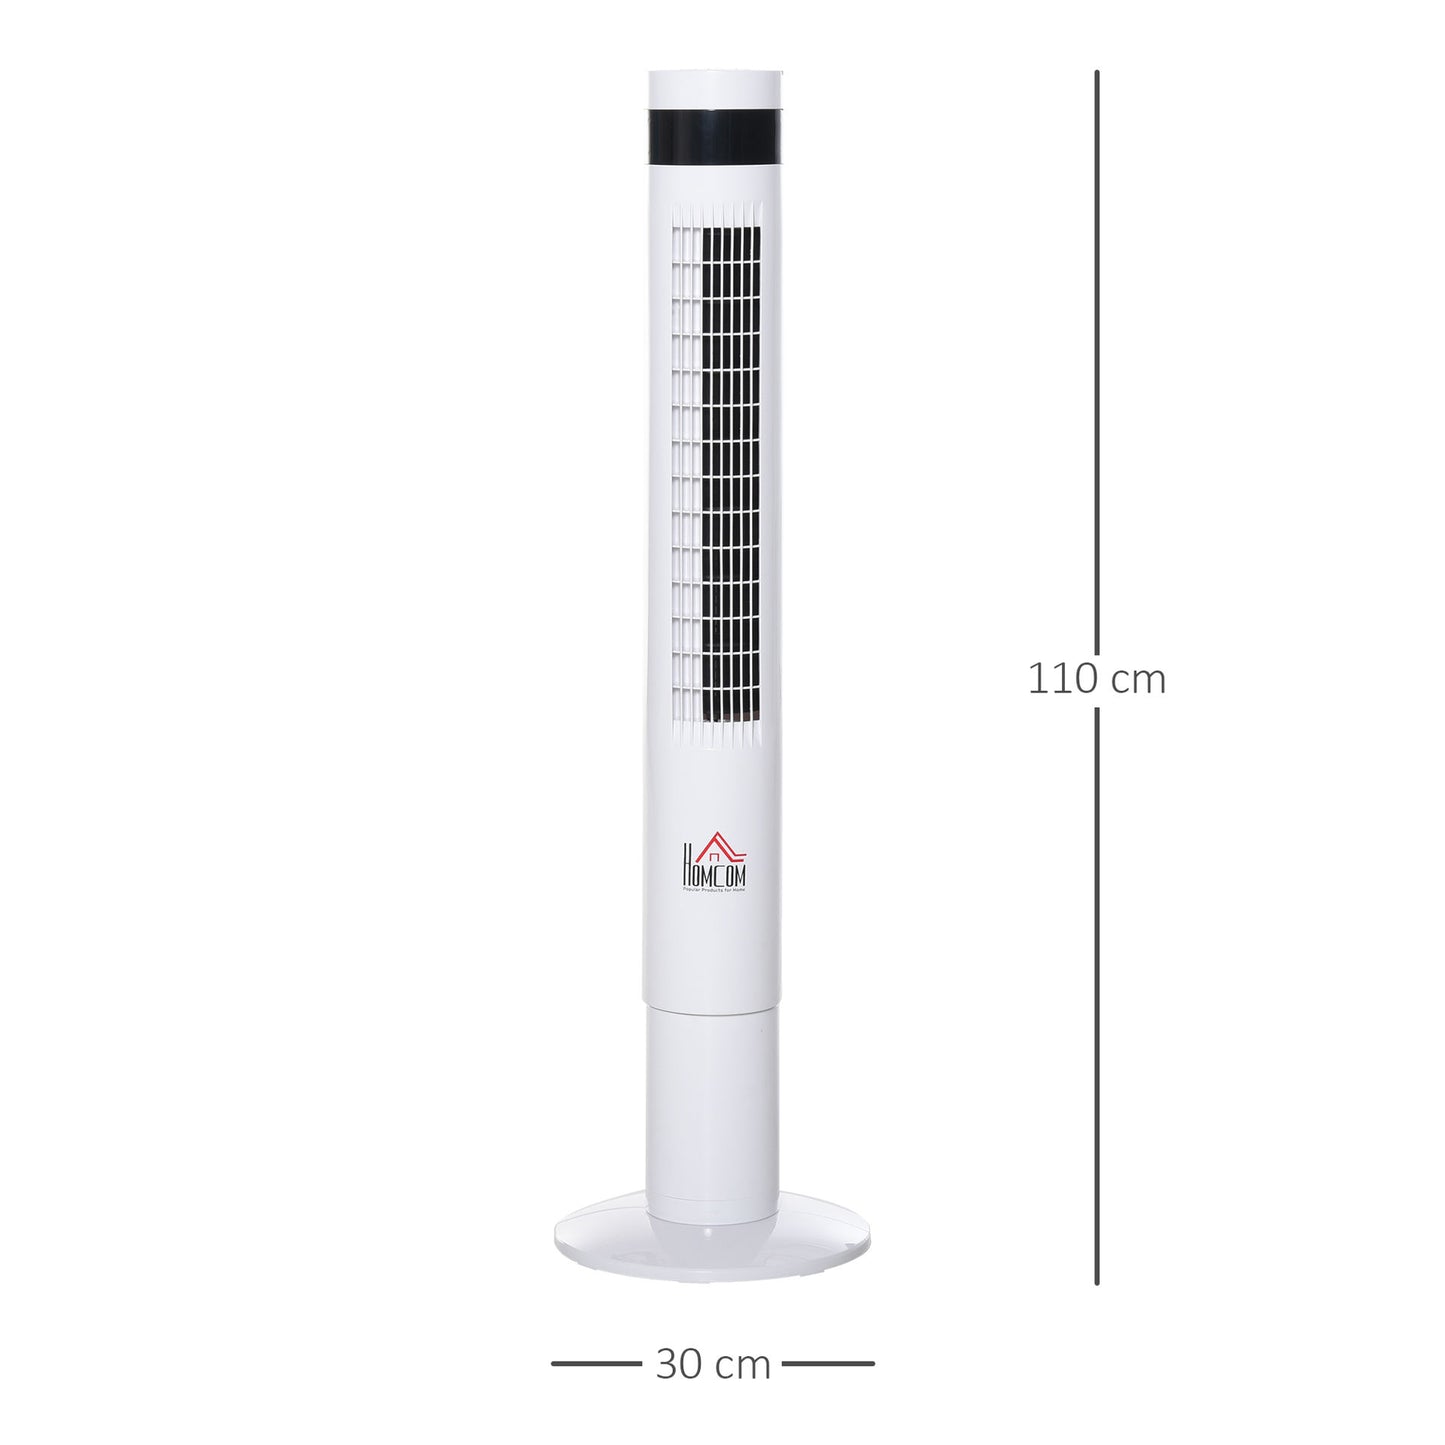 Ventilateur tour Nancy's Aultsville avec télécommande - 3 modes et vitesses - Fonction minuterie - Blanc